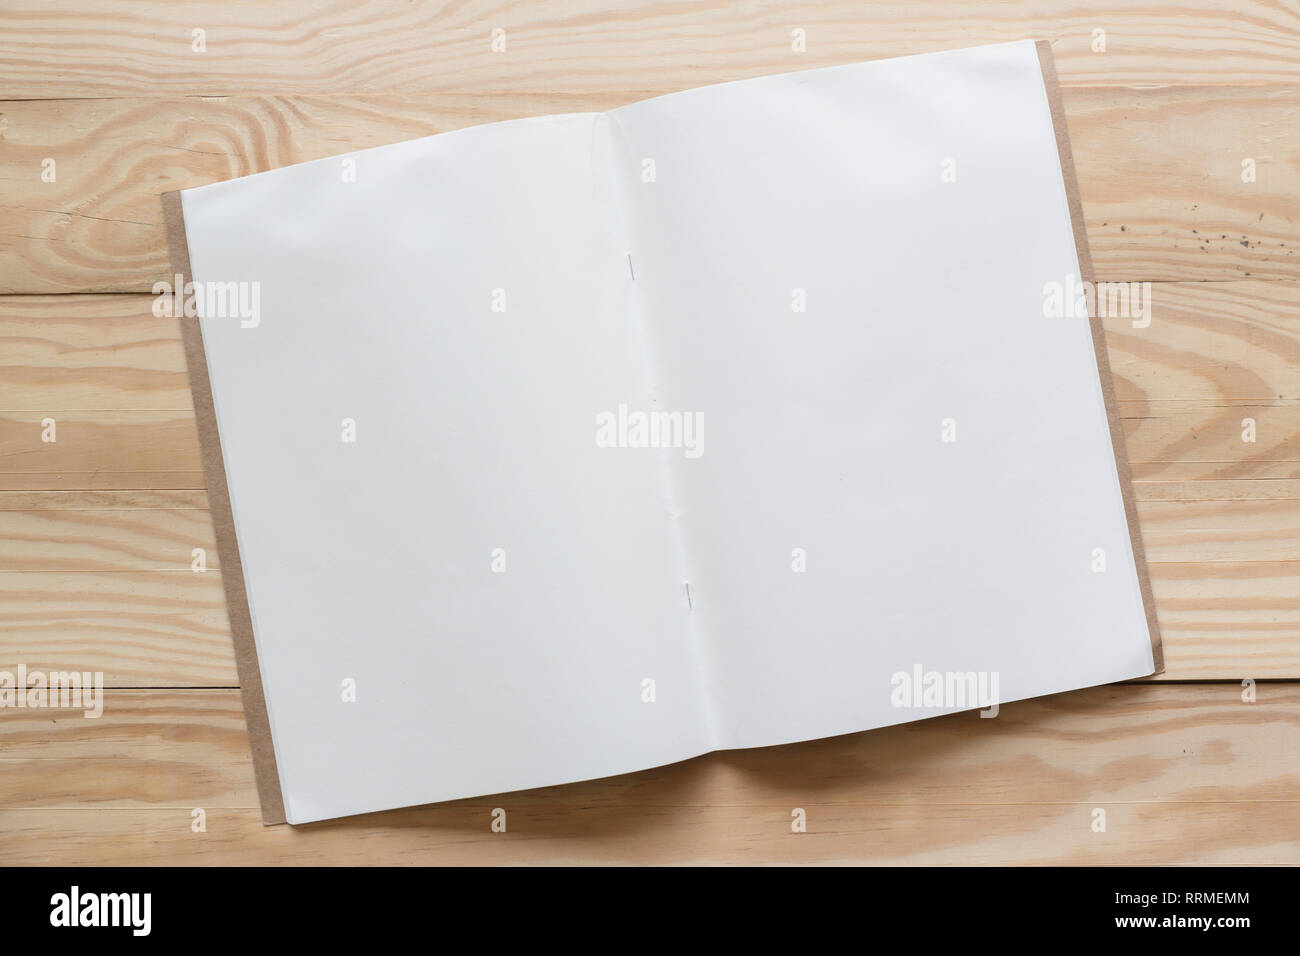 Abstrakte Leer ein Weißbuch über Holz- table top Hintergrund Konzept für leere Schreiben business Blatt, normales Mock up Bildung Vorlage, Flyer. Stockfoto